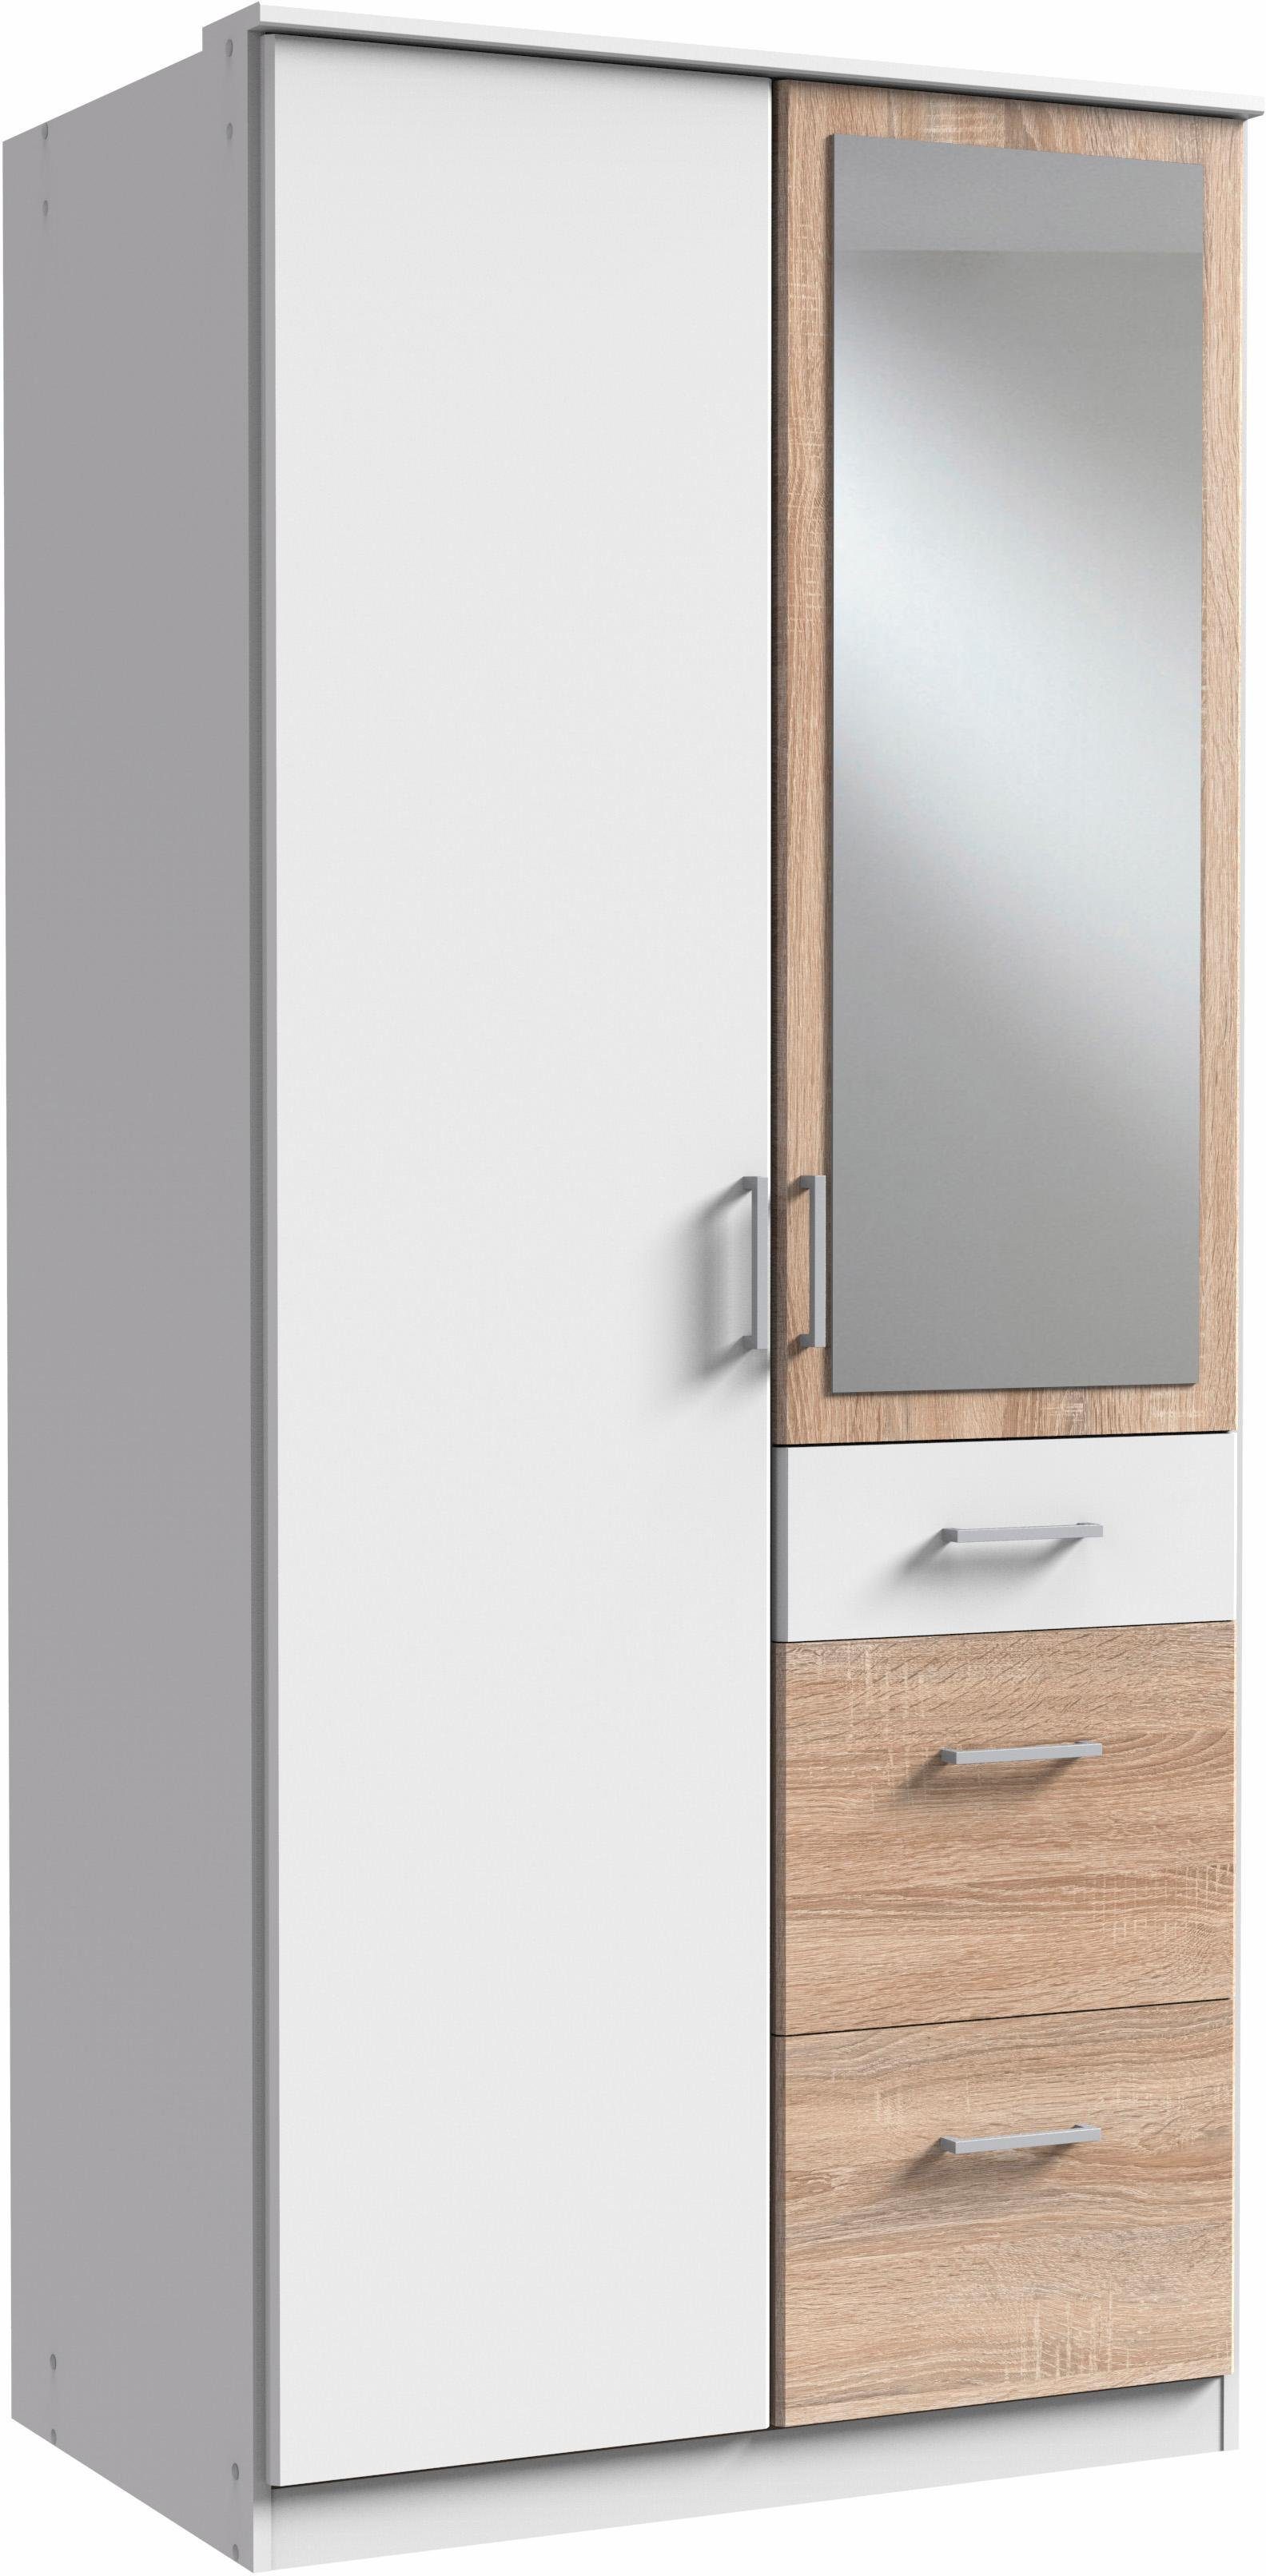 Wimex Kleiderschrank Click mit weiß/struktureichefarben hell Spiegel